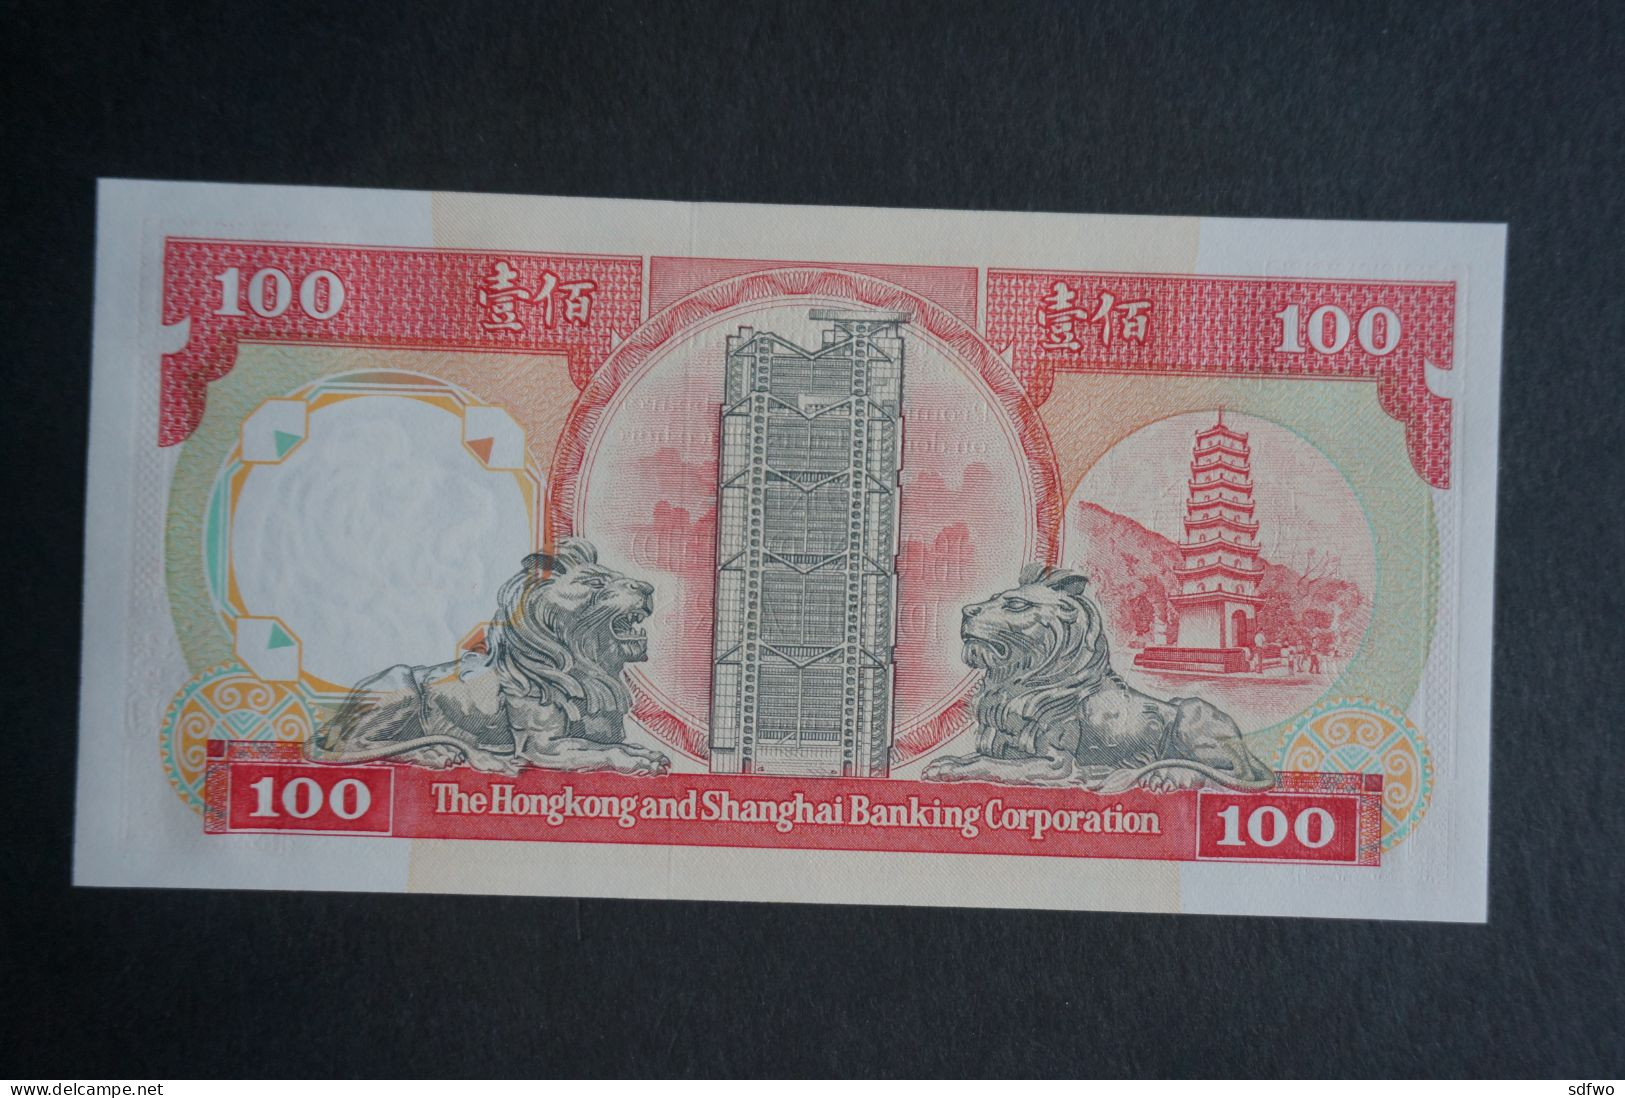 (Tv) 1991 HONG KONG OLD ISSUE - HSBC 100 DOLLARS ($100) Serial No. NN039099 (UNC) - Hongkong